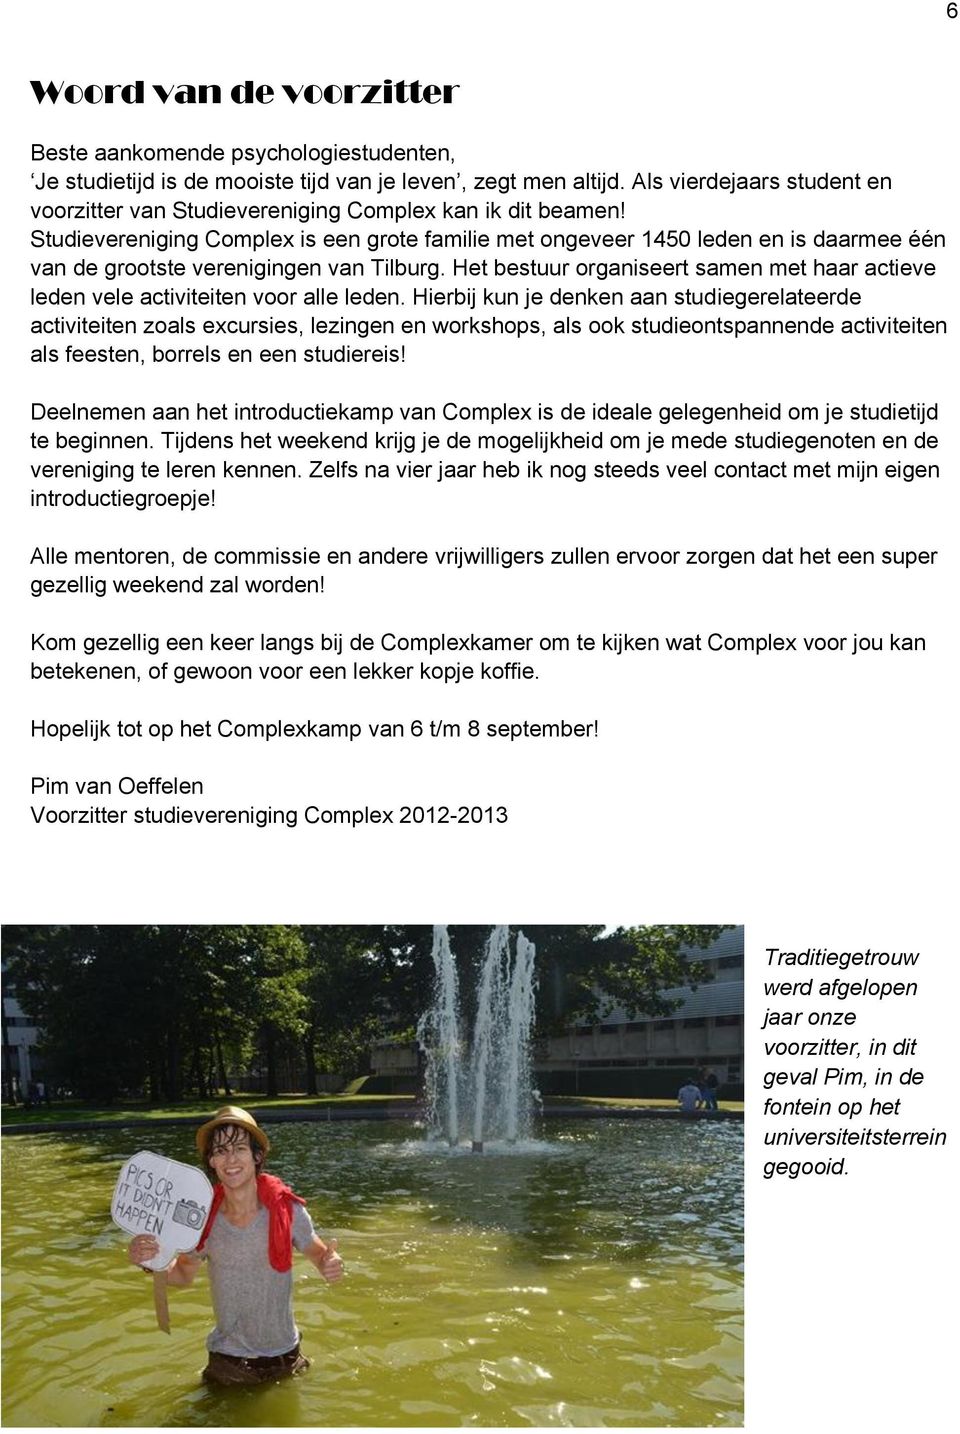 Studievereniging Complex is een grote familie met ongeveer 1450 leden en is daarmee één van de grootste verenigingen van Tilburg.